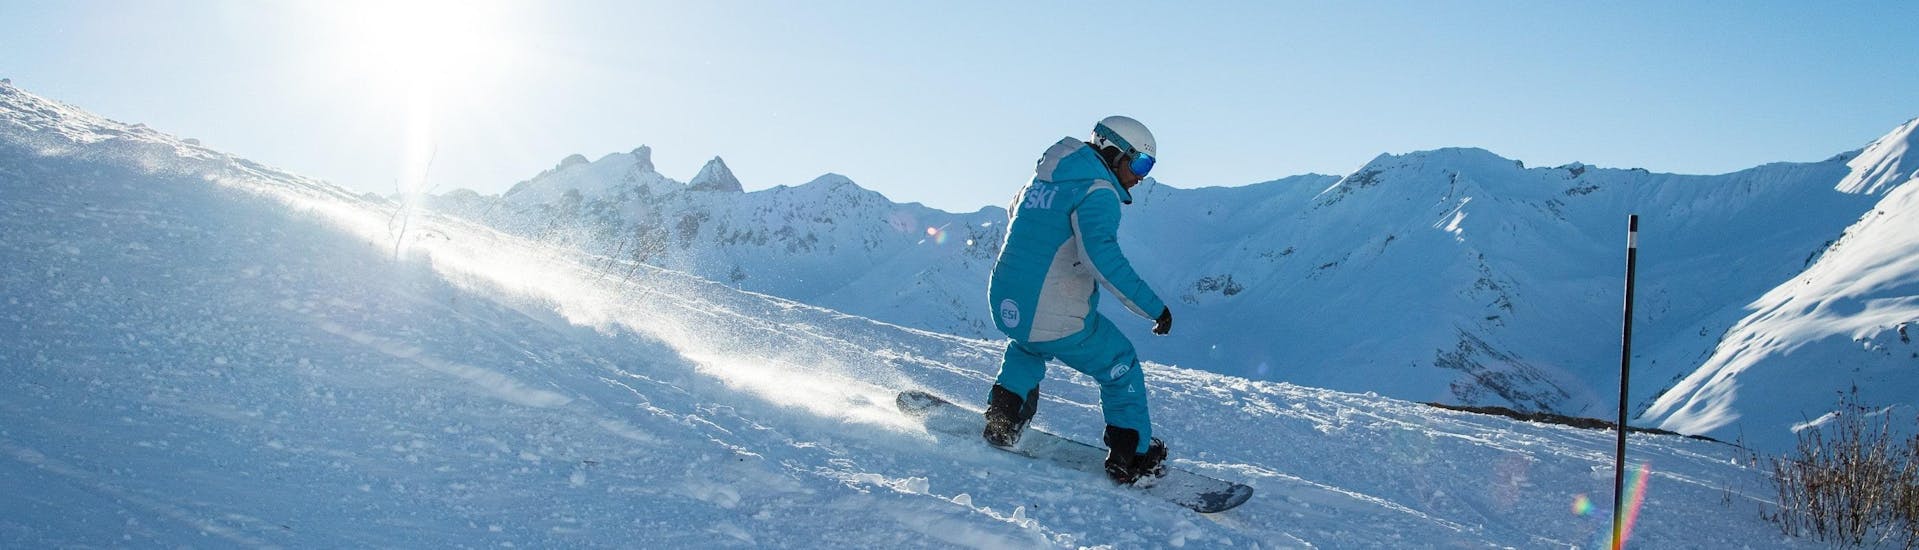 Privater Snowboardkurs ab 7 Jahren für alle Levels.